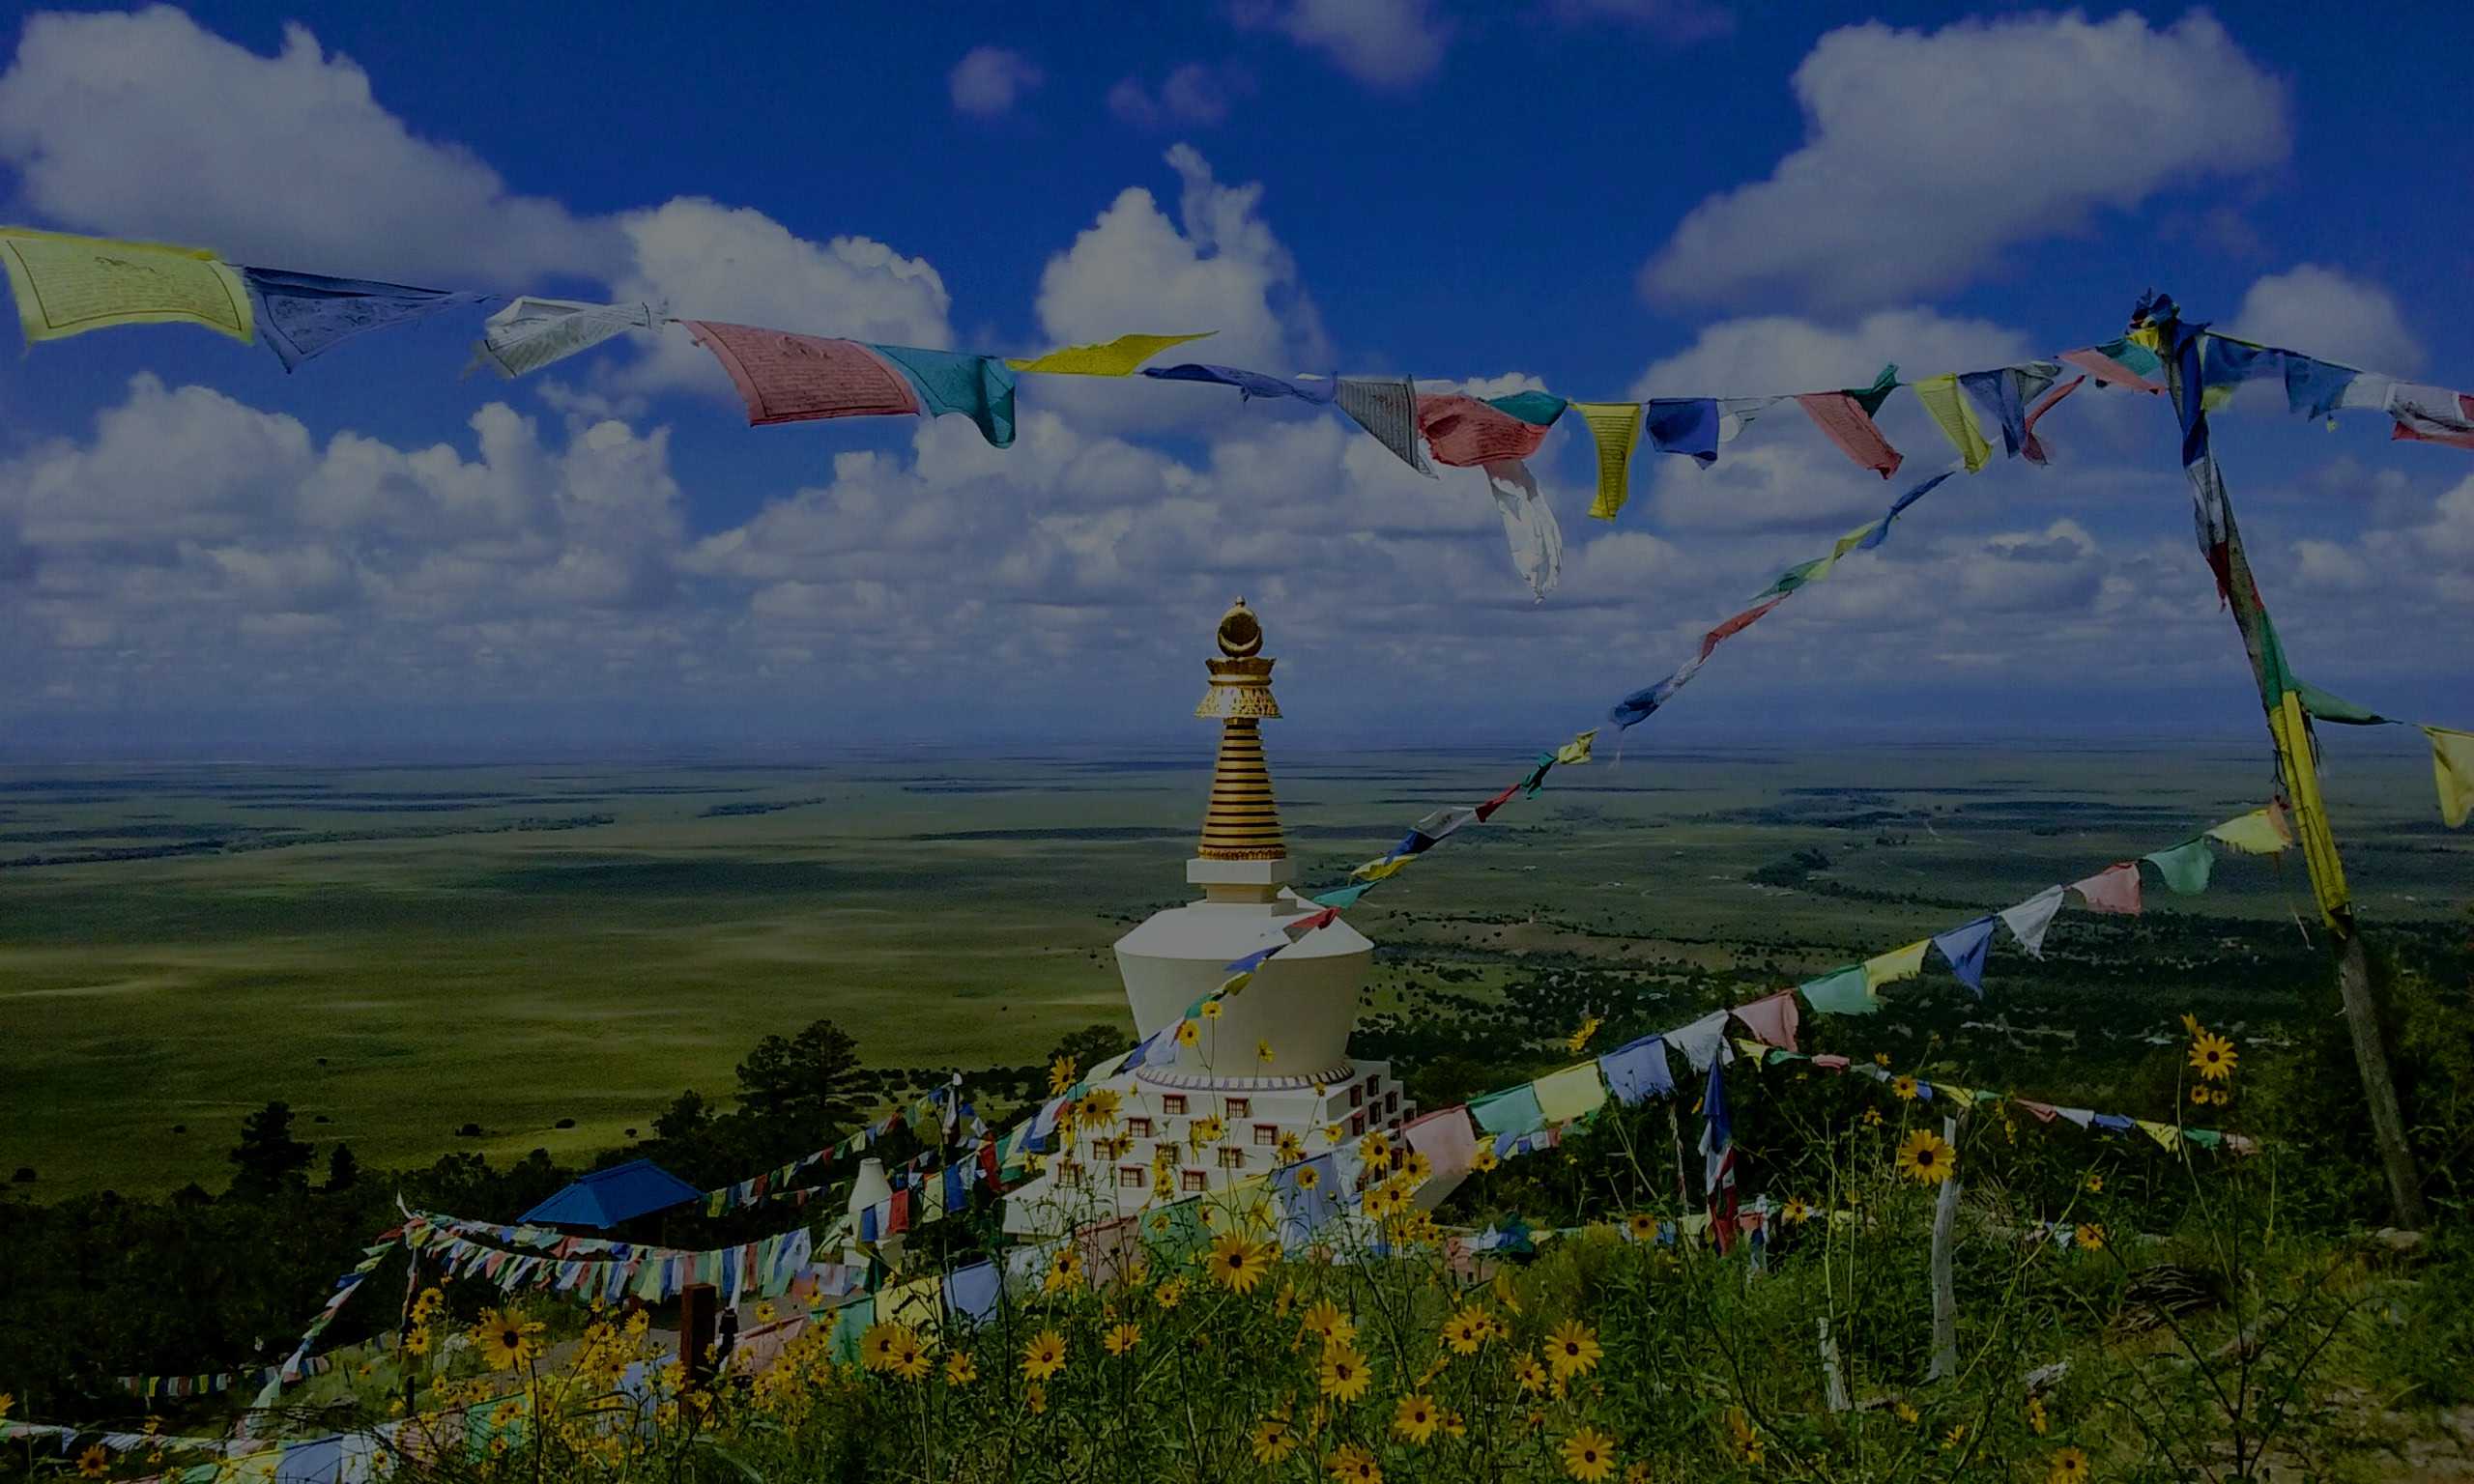 The Tashi Gomang Stupa